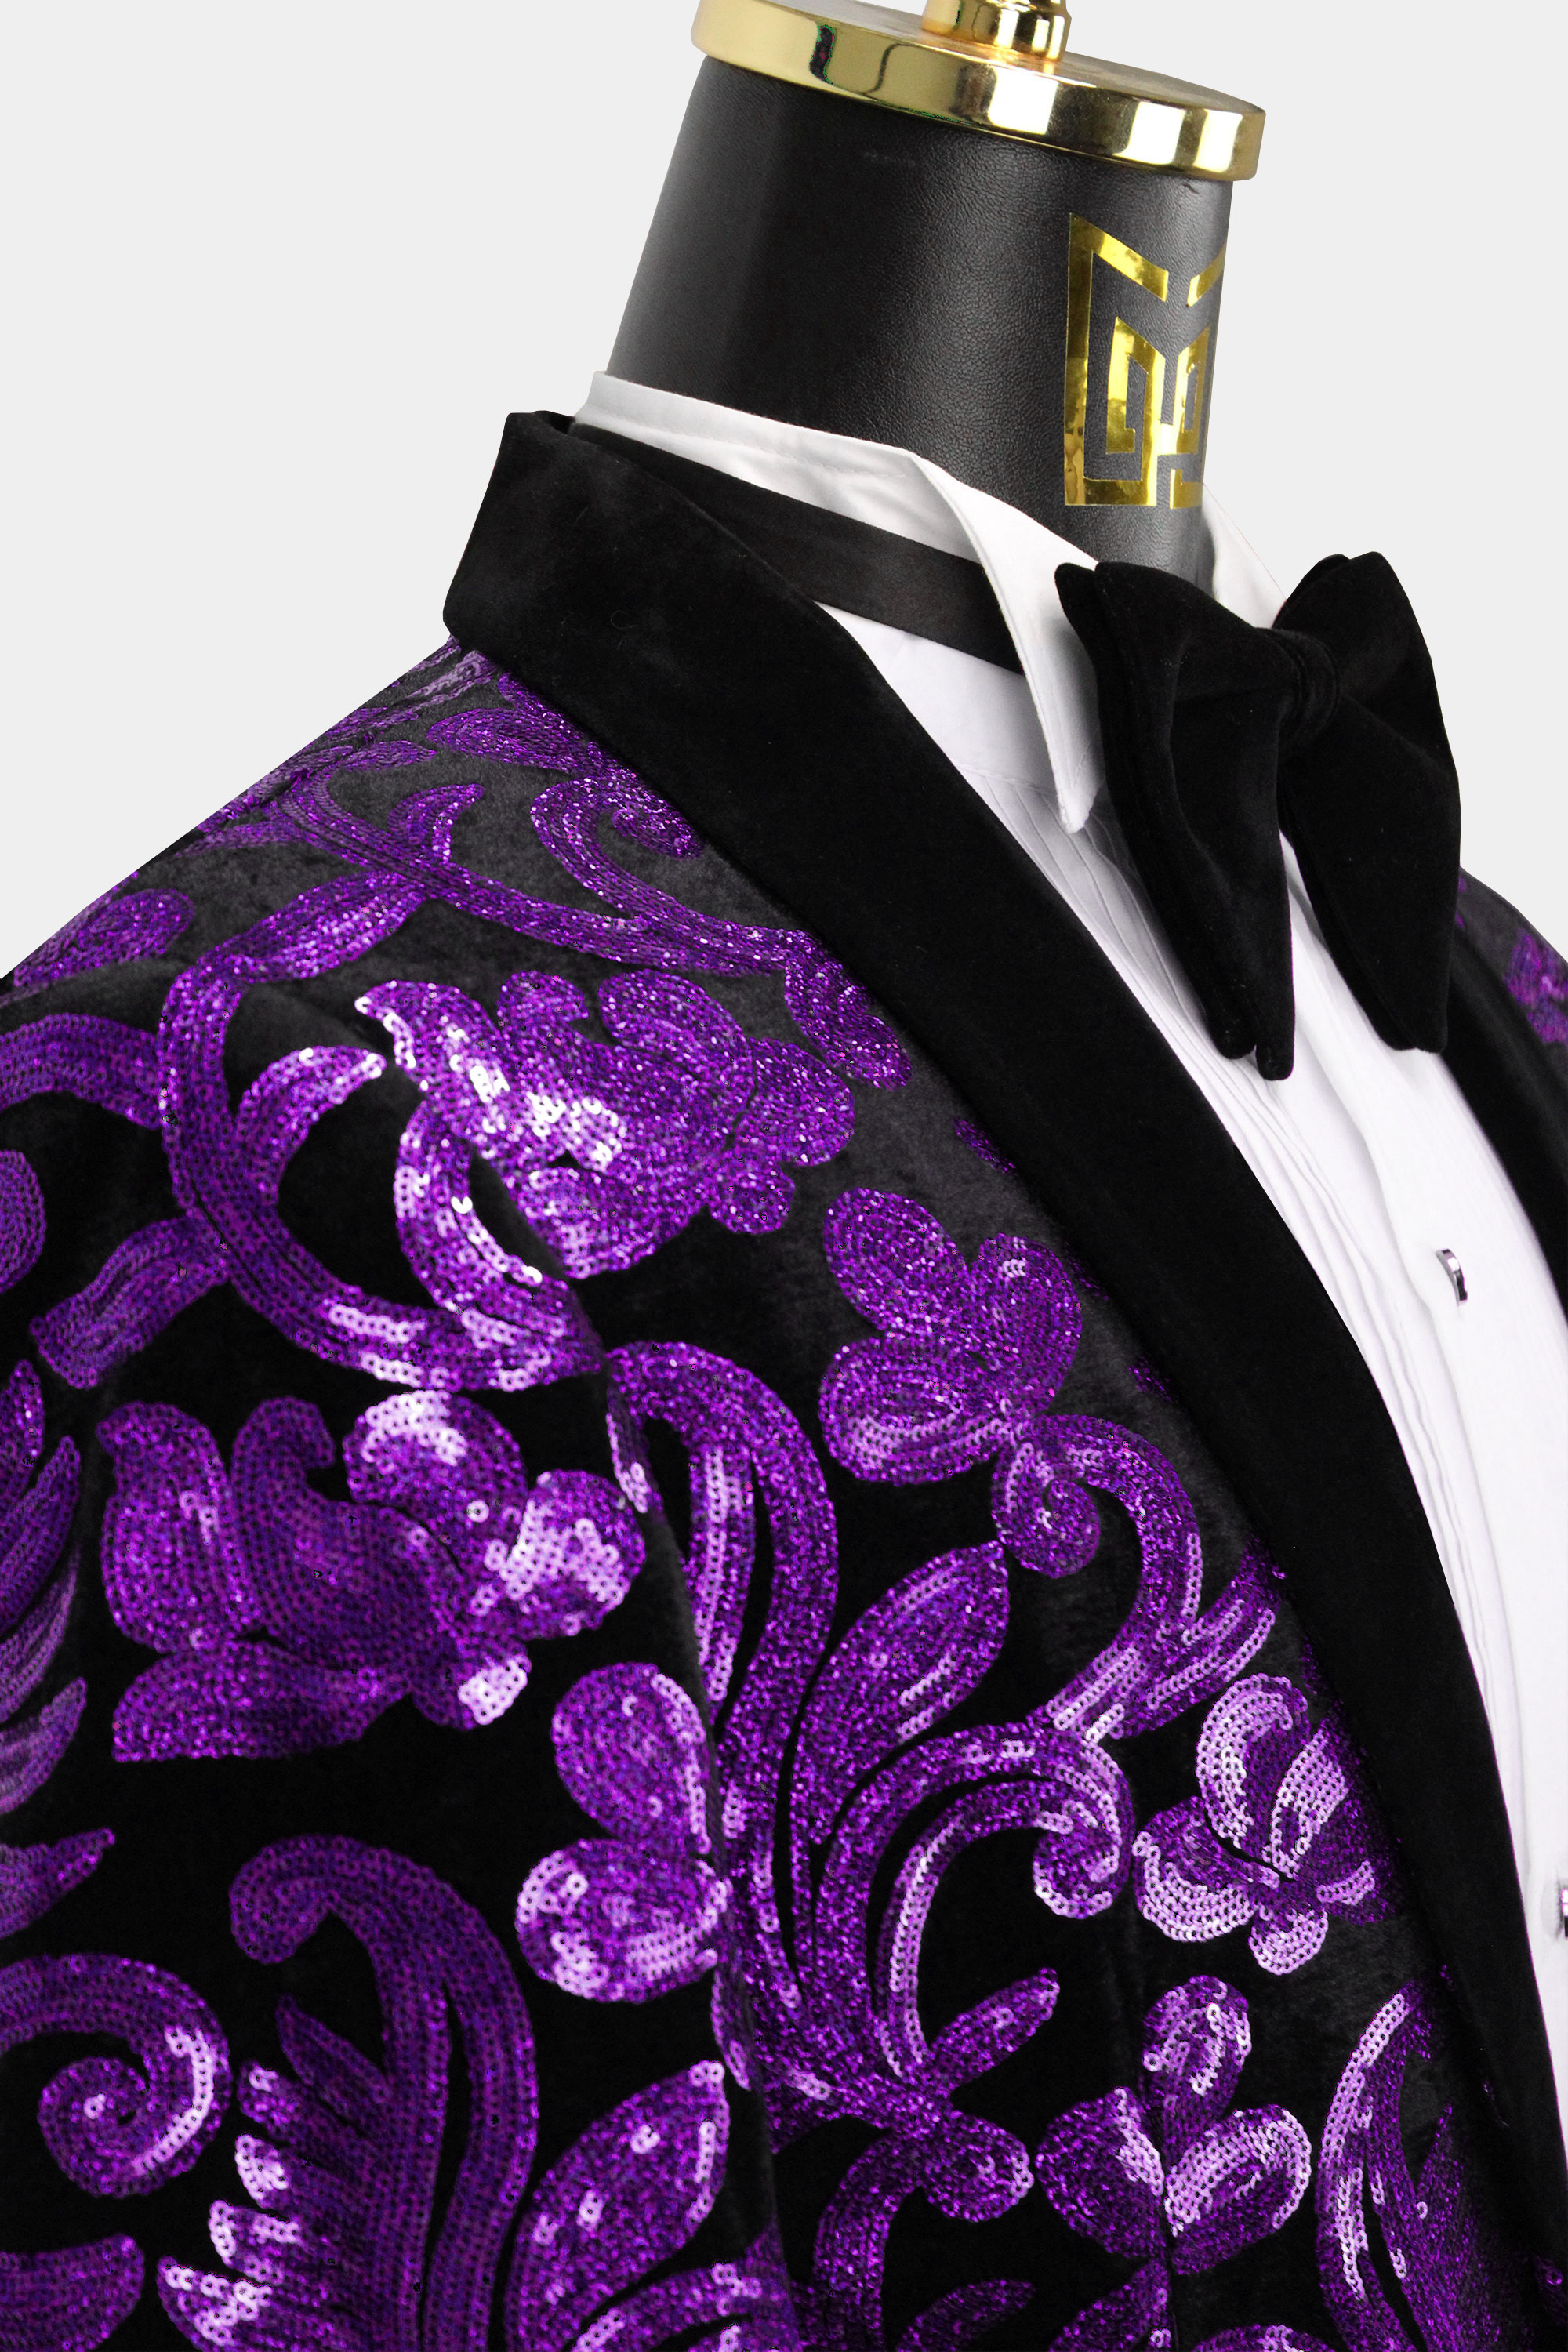 Mens-Black-and-Purple-Sequin-Jacket-Blazer-from-Gentlemansguru.com